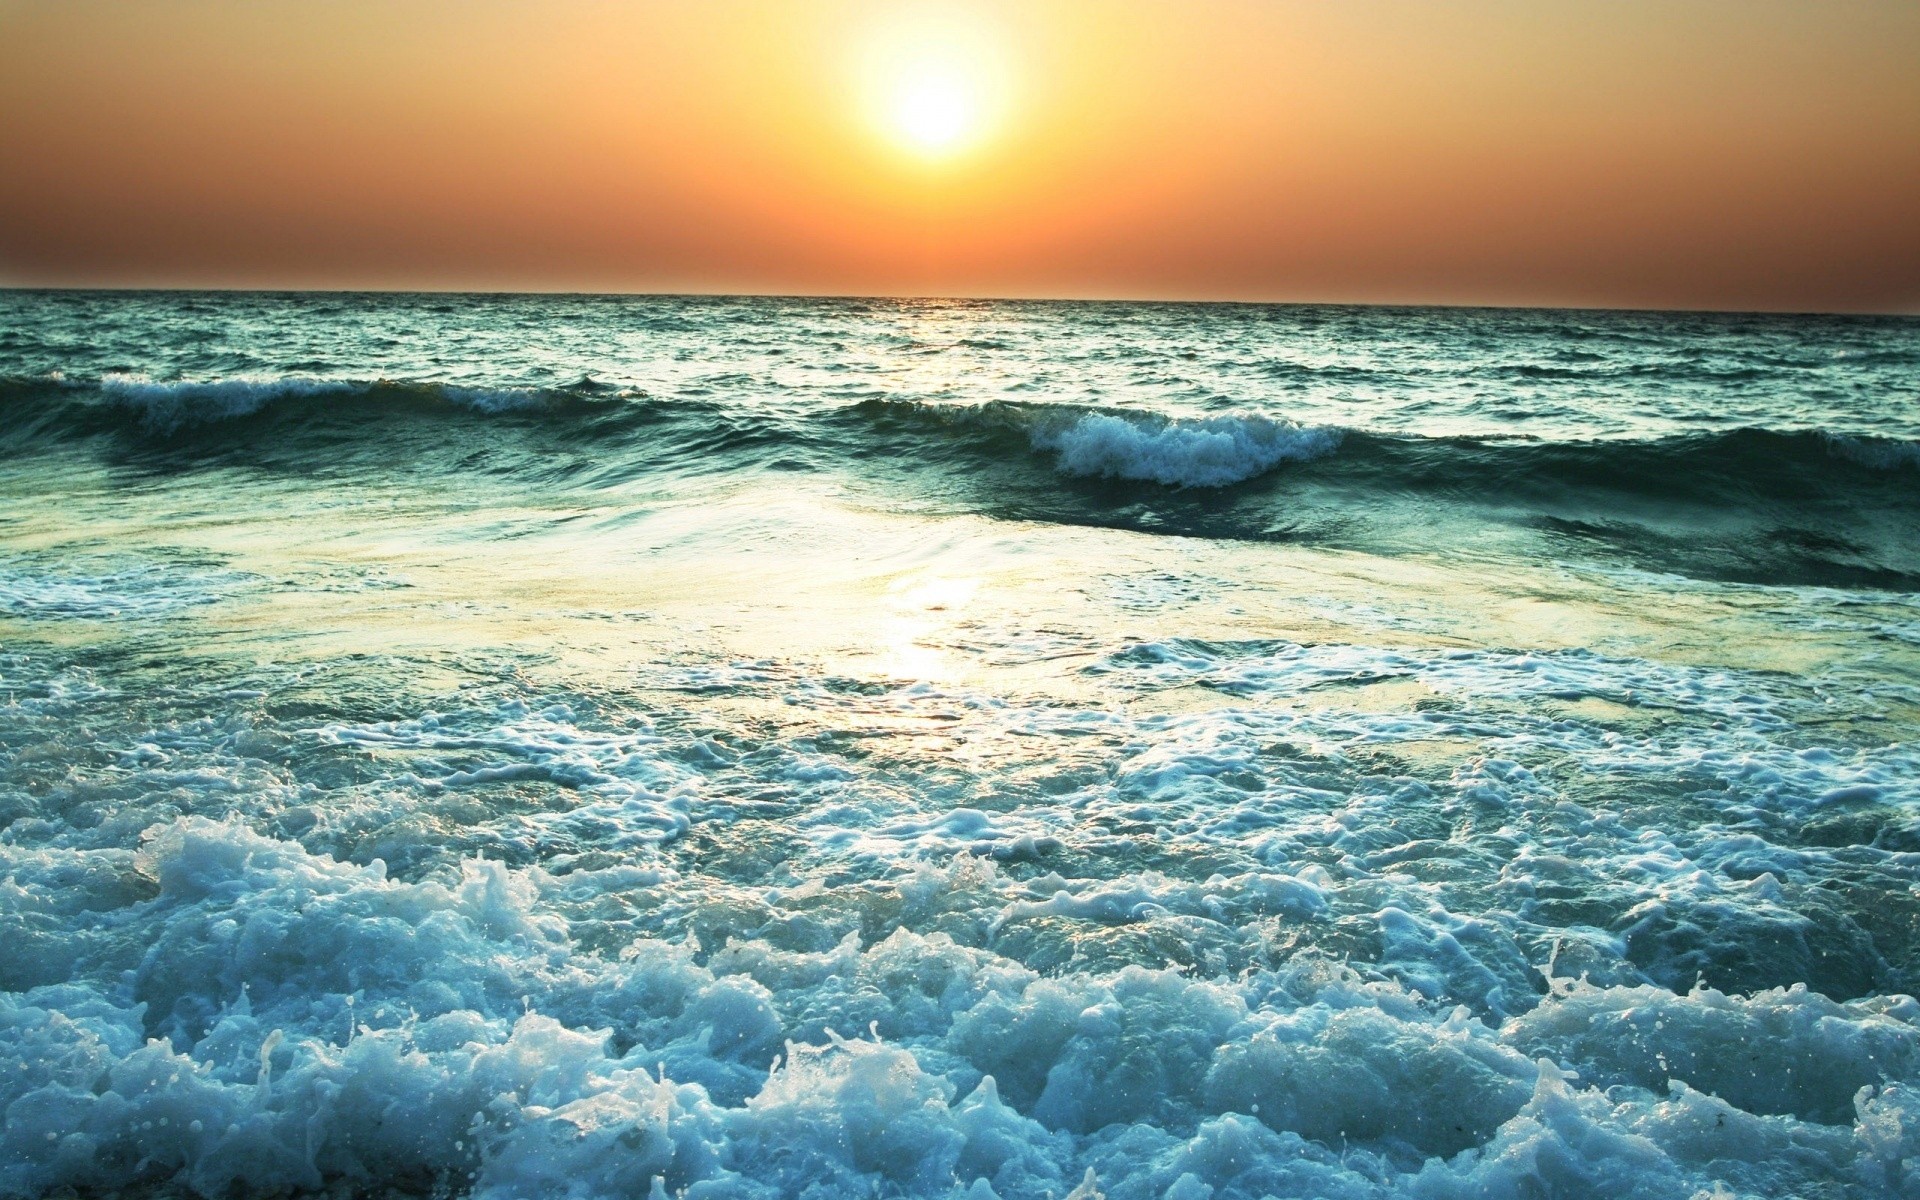 пейзажи воды закат море океан солнце пляж пейзаж прибой сумрак рассвет моря волна хорошую погоду тропический песок путешествия природа лето небо